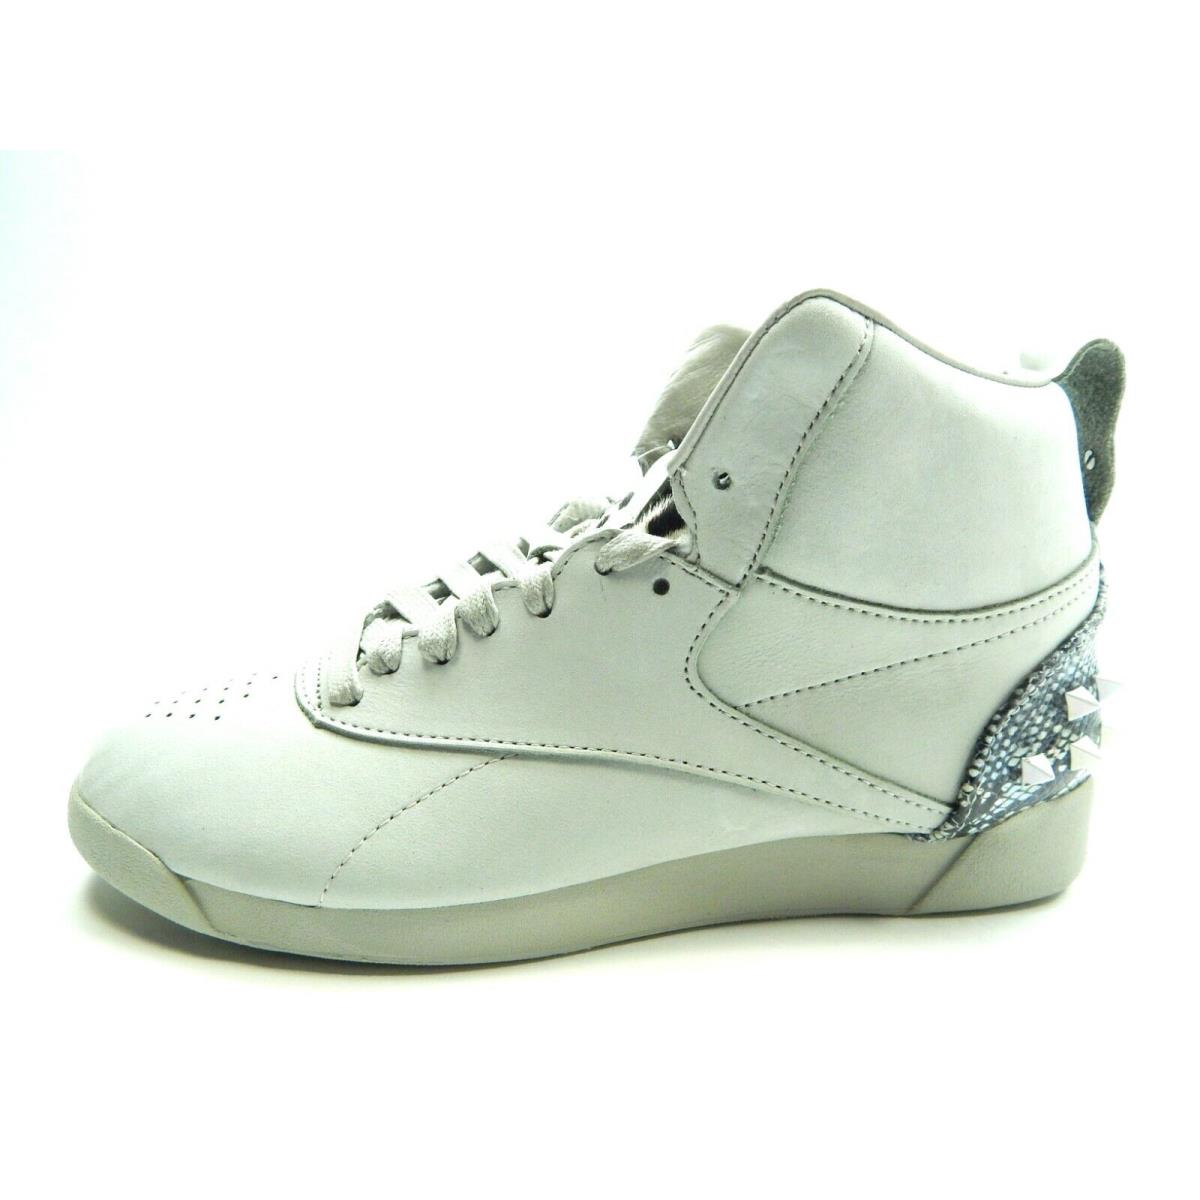 Reebok F/s HI MU Training FW4658 Women Shoes Size 7.5